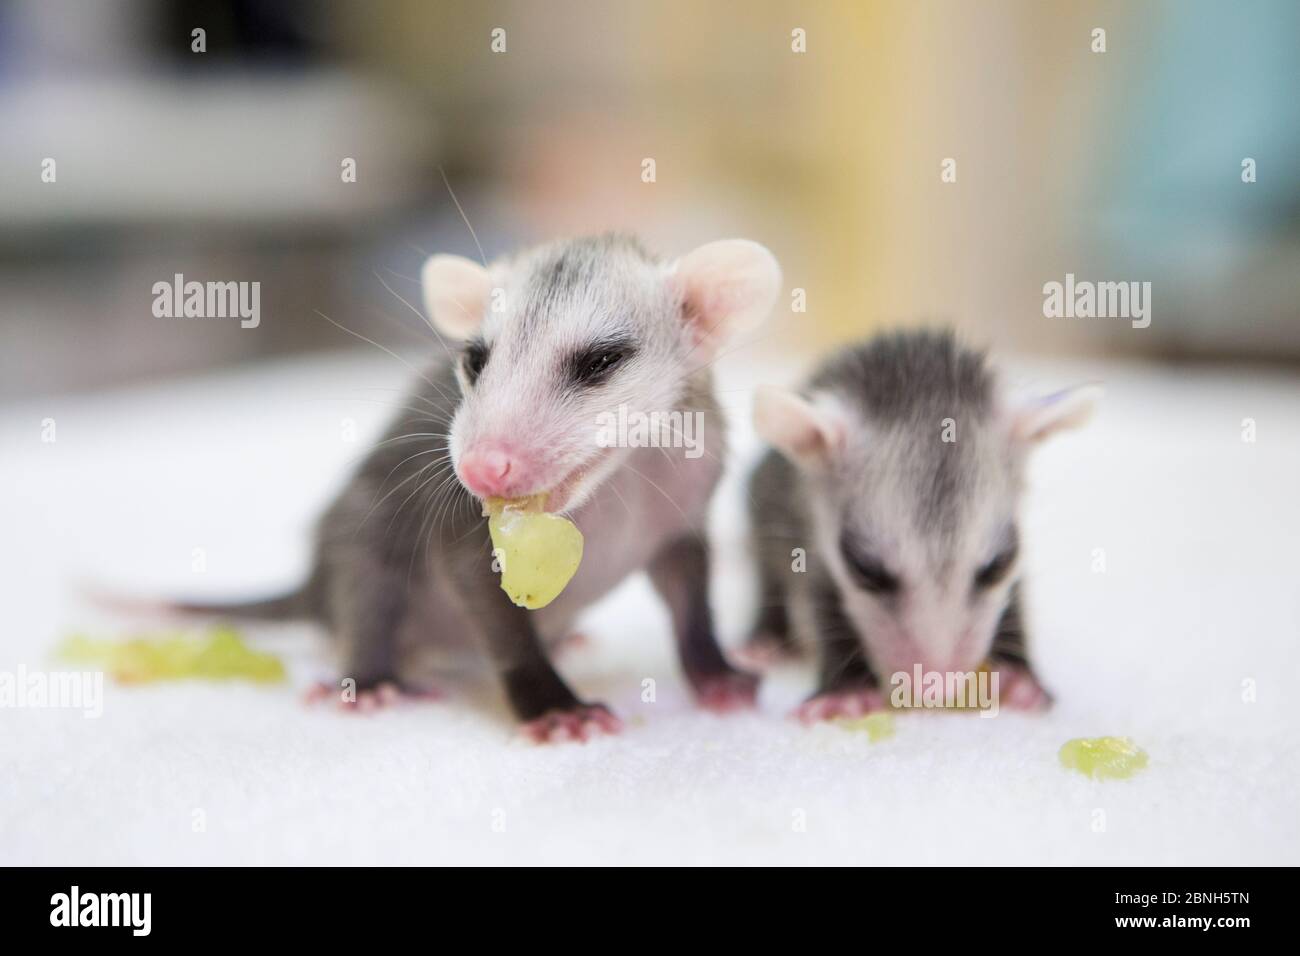 Virginia opossum (Didelphis virginiana) les bébés orphelins ont dix semaines, manger du raisin haché. Leur mère a été frappée par la voiture. WildCare, San Rafael, Califo Banque D'Images